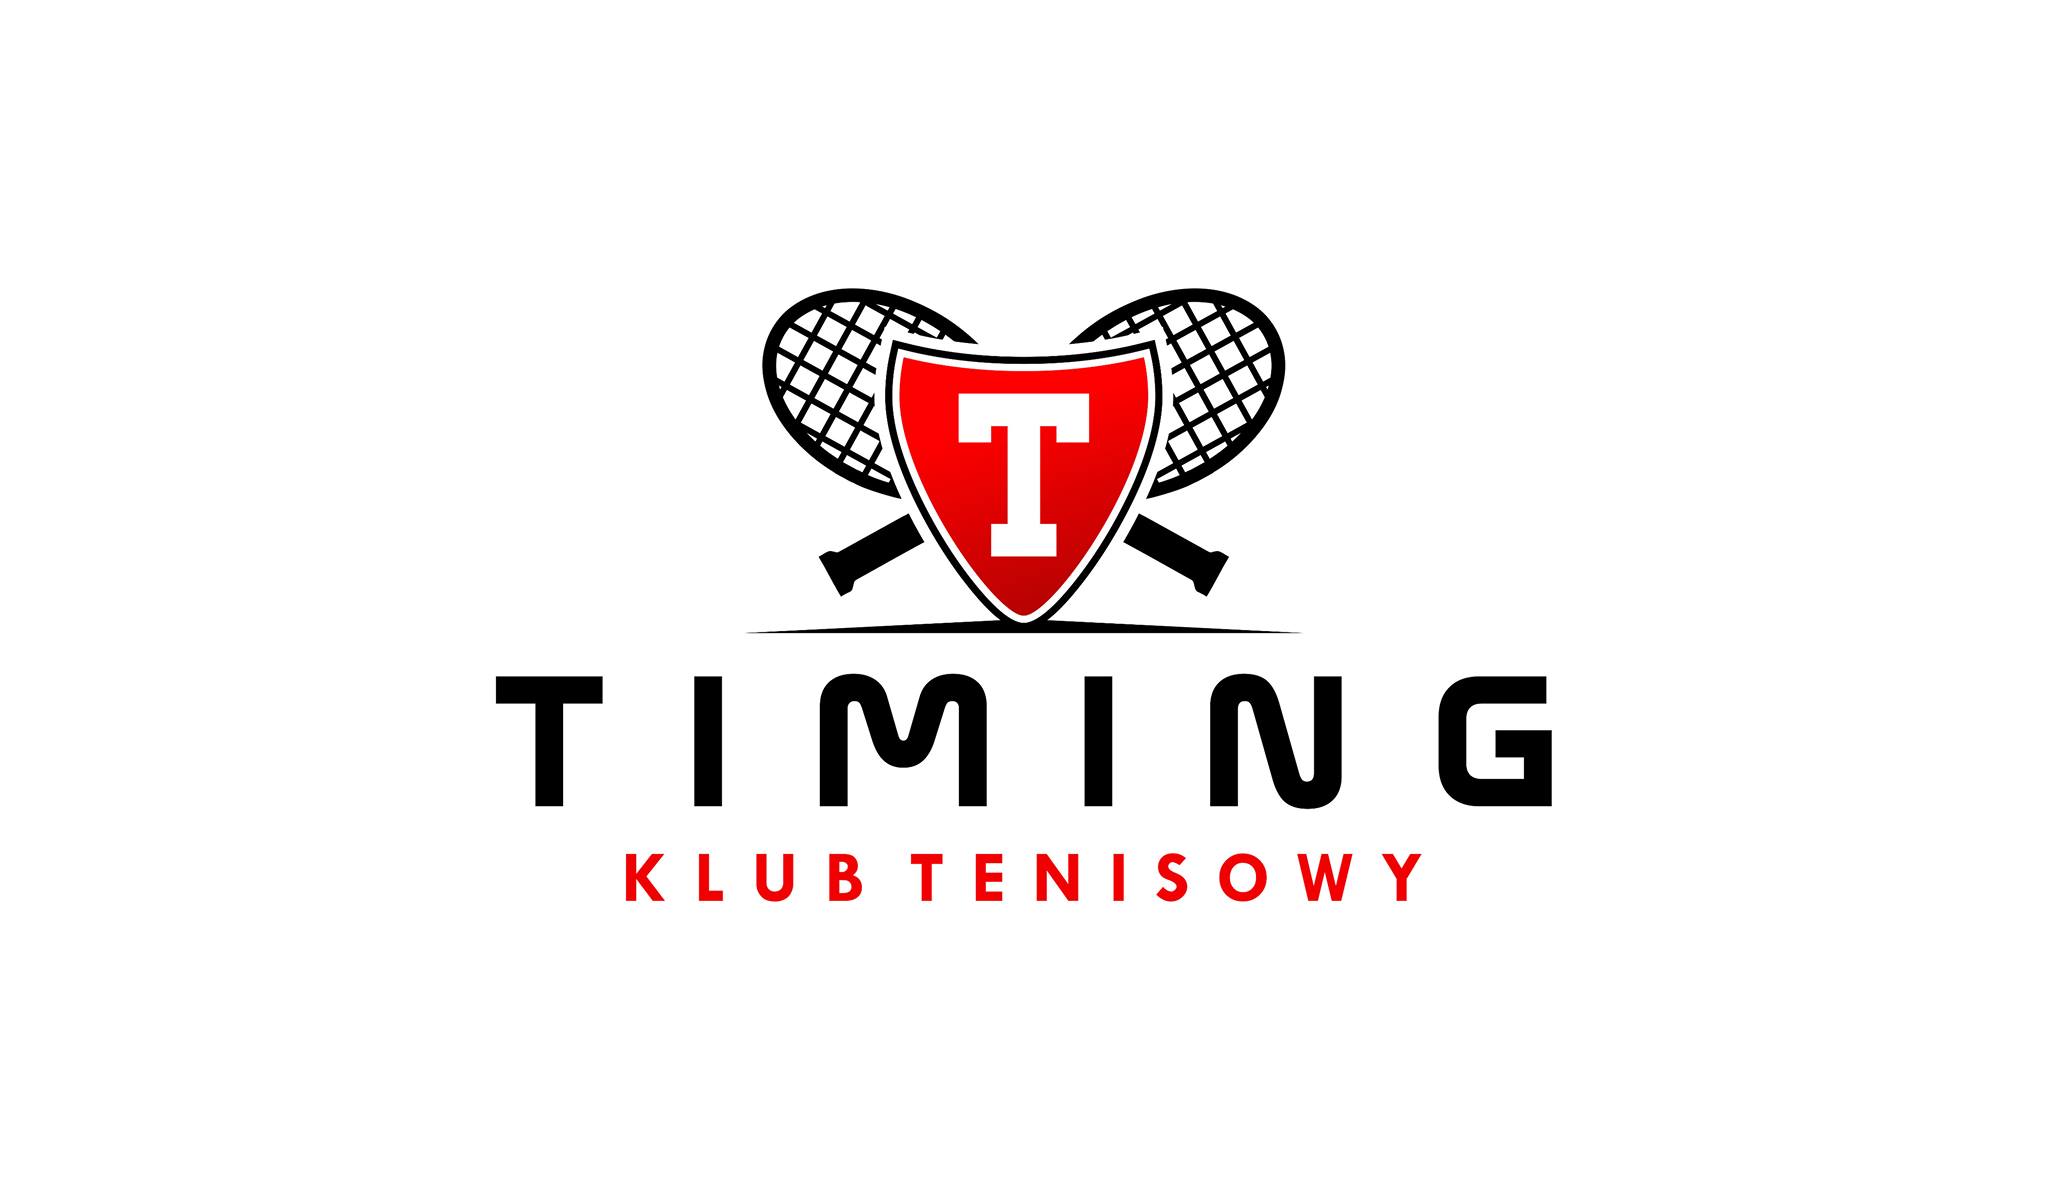 TIMING klub tenisowy